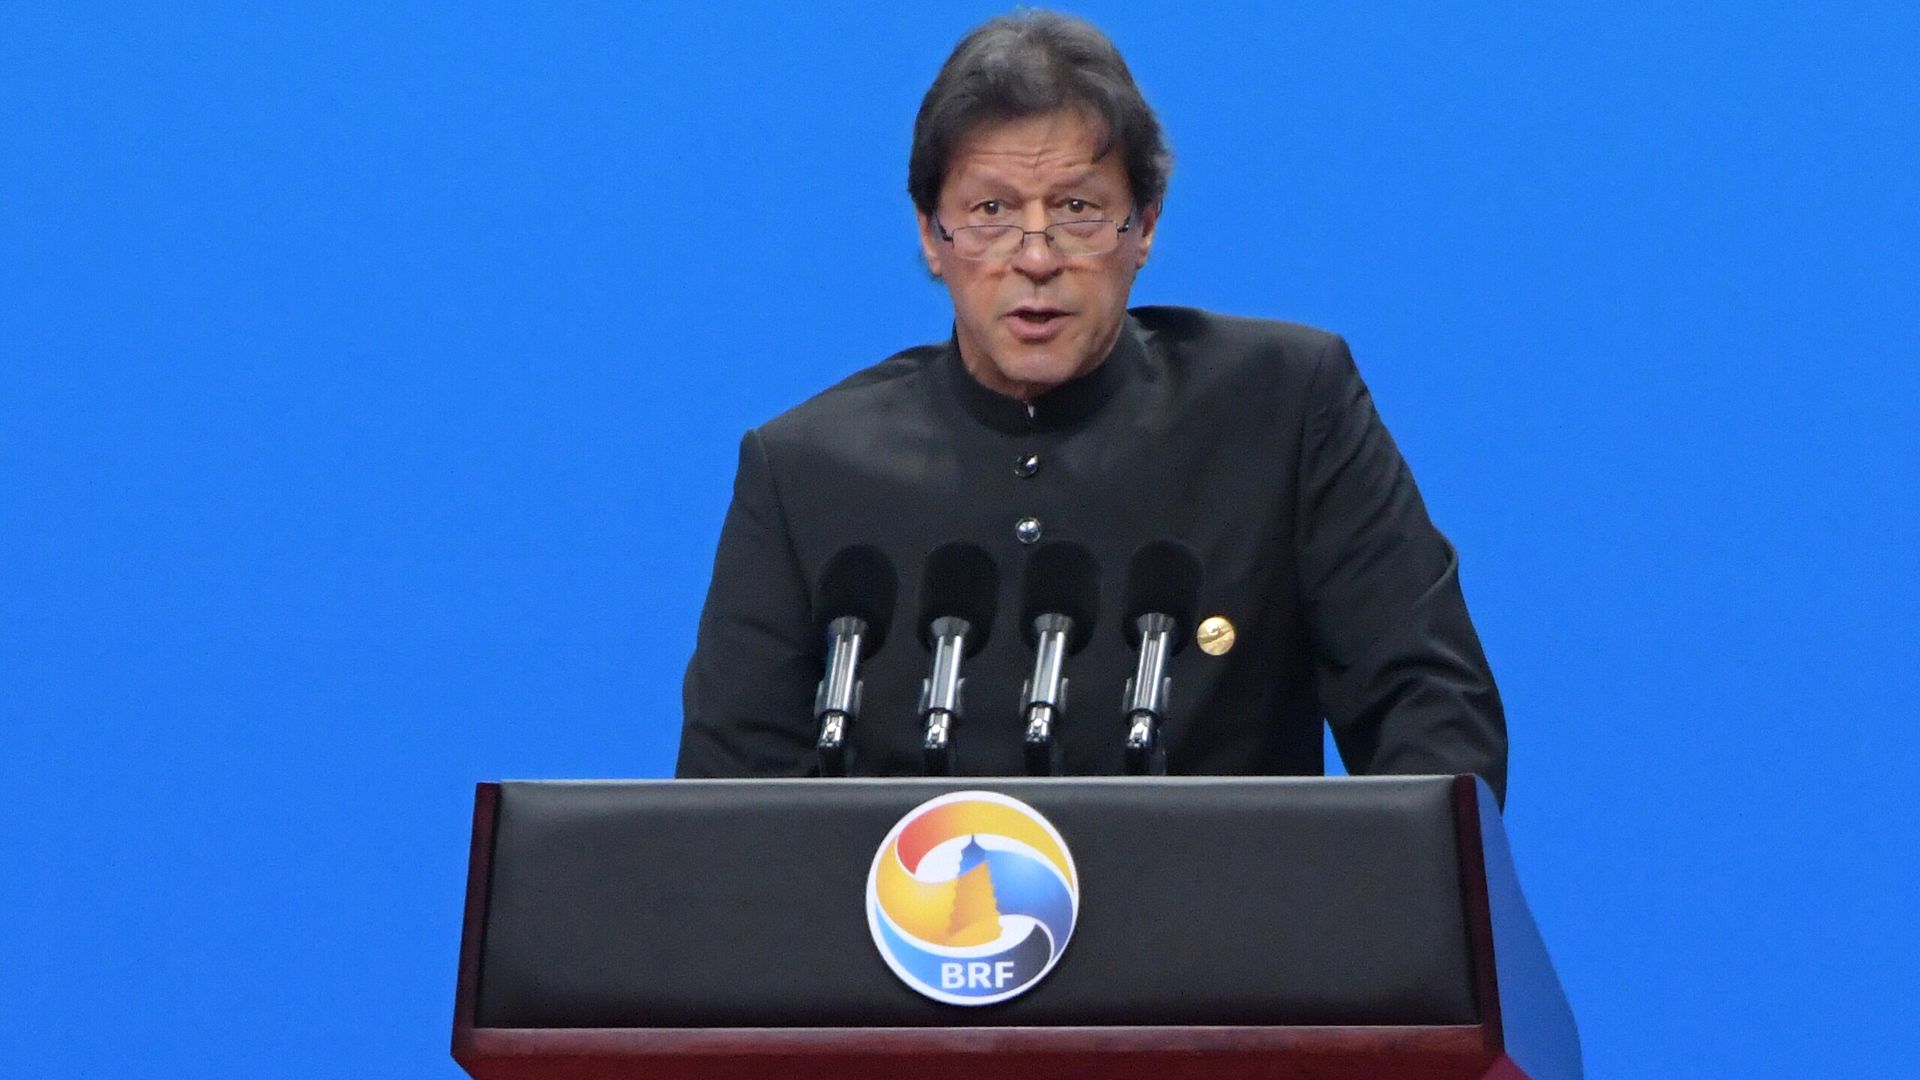 Imran Khan speaking at a lectern